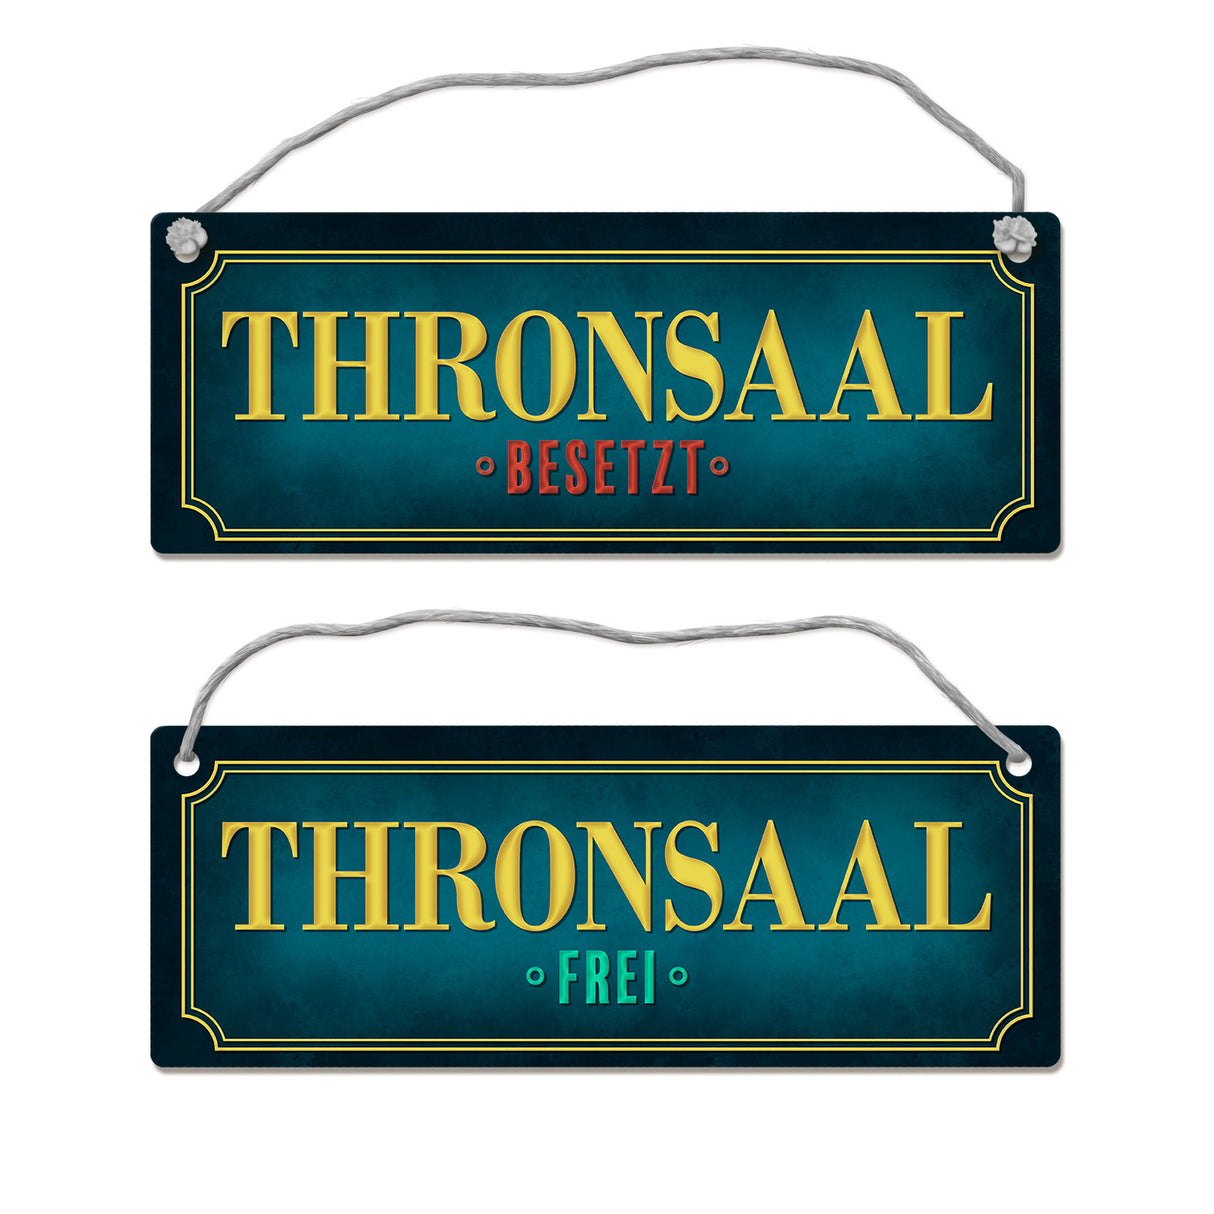 Thronsaal ist frei oder besetzt Toiletten-Wendeschild mit Kordel